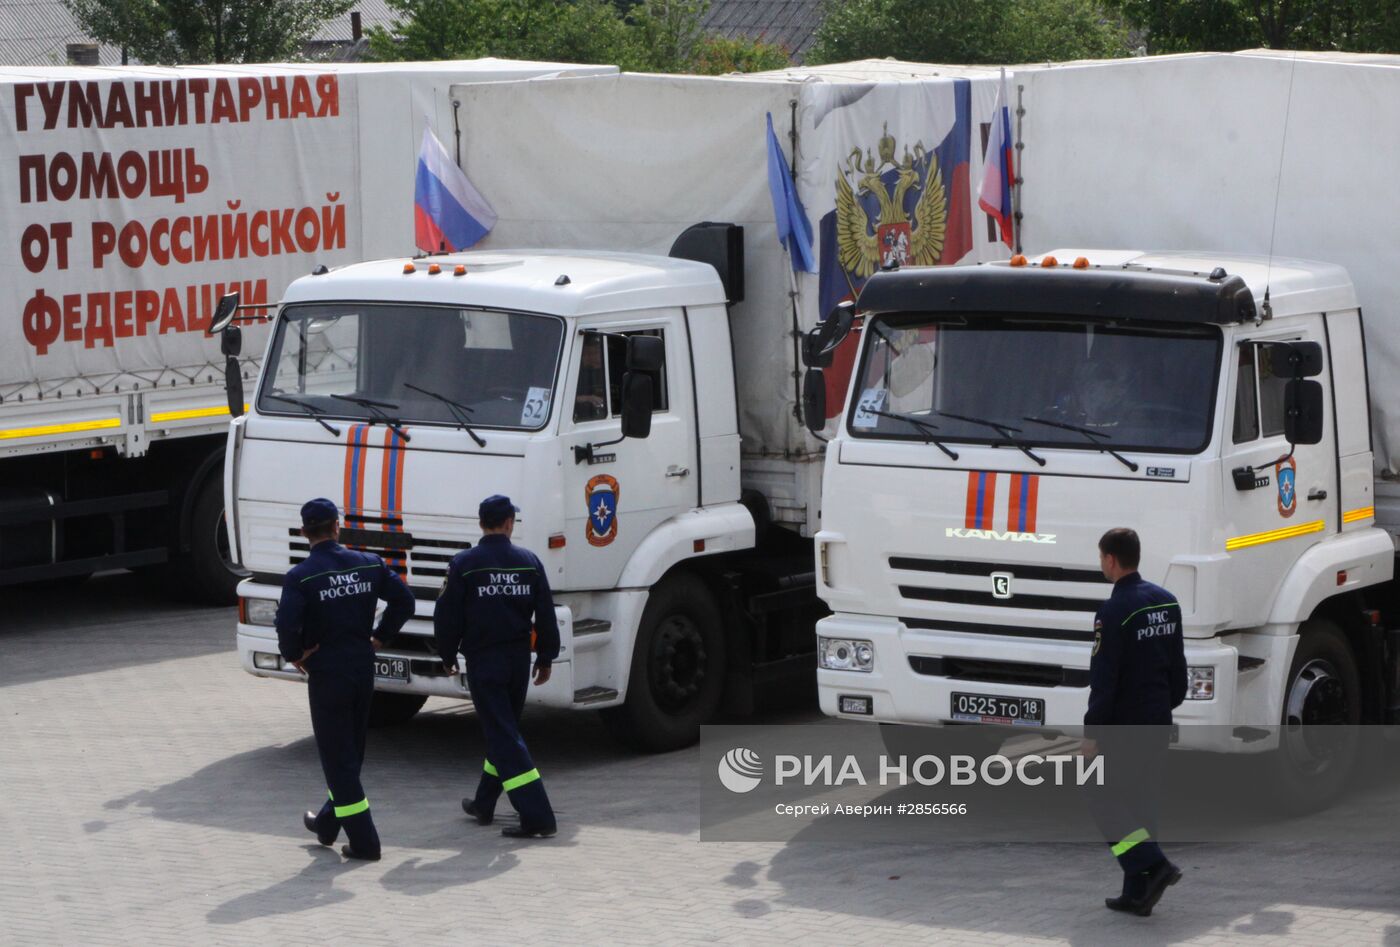 52-й гуманитарный конвой из России прибыл в Донецк